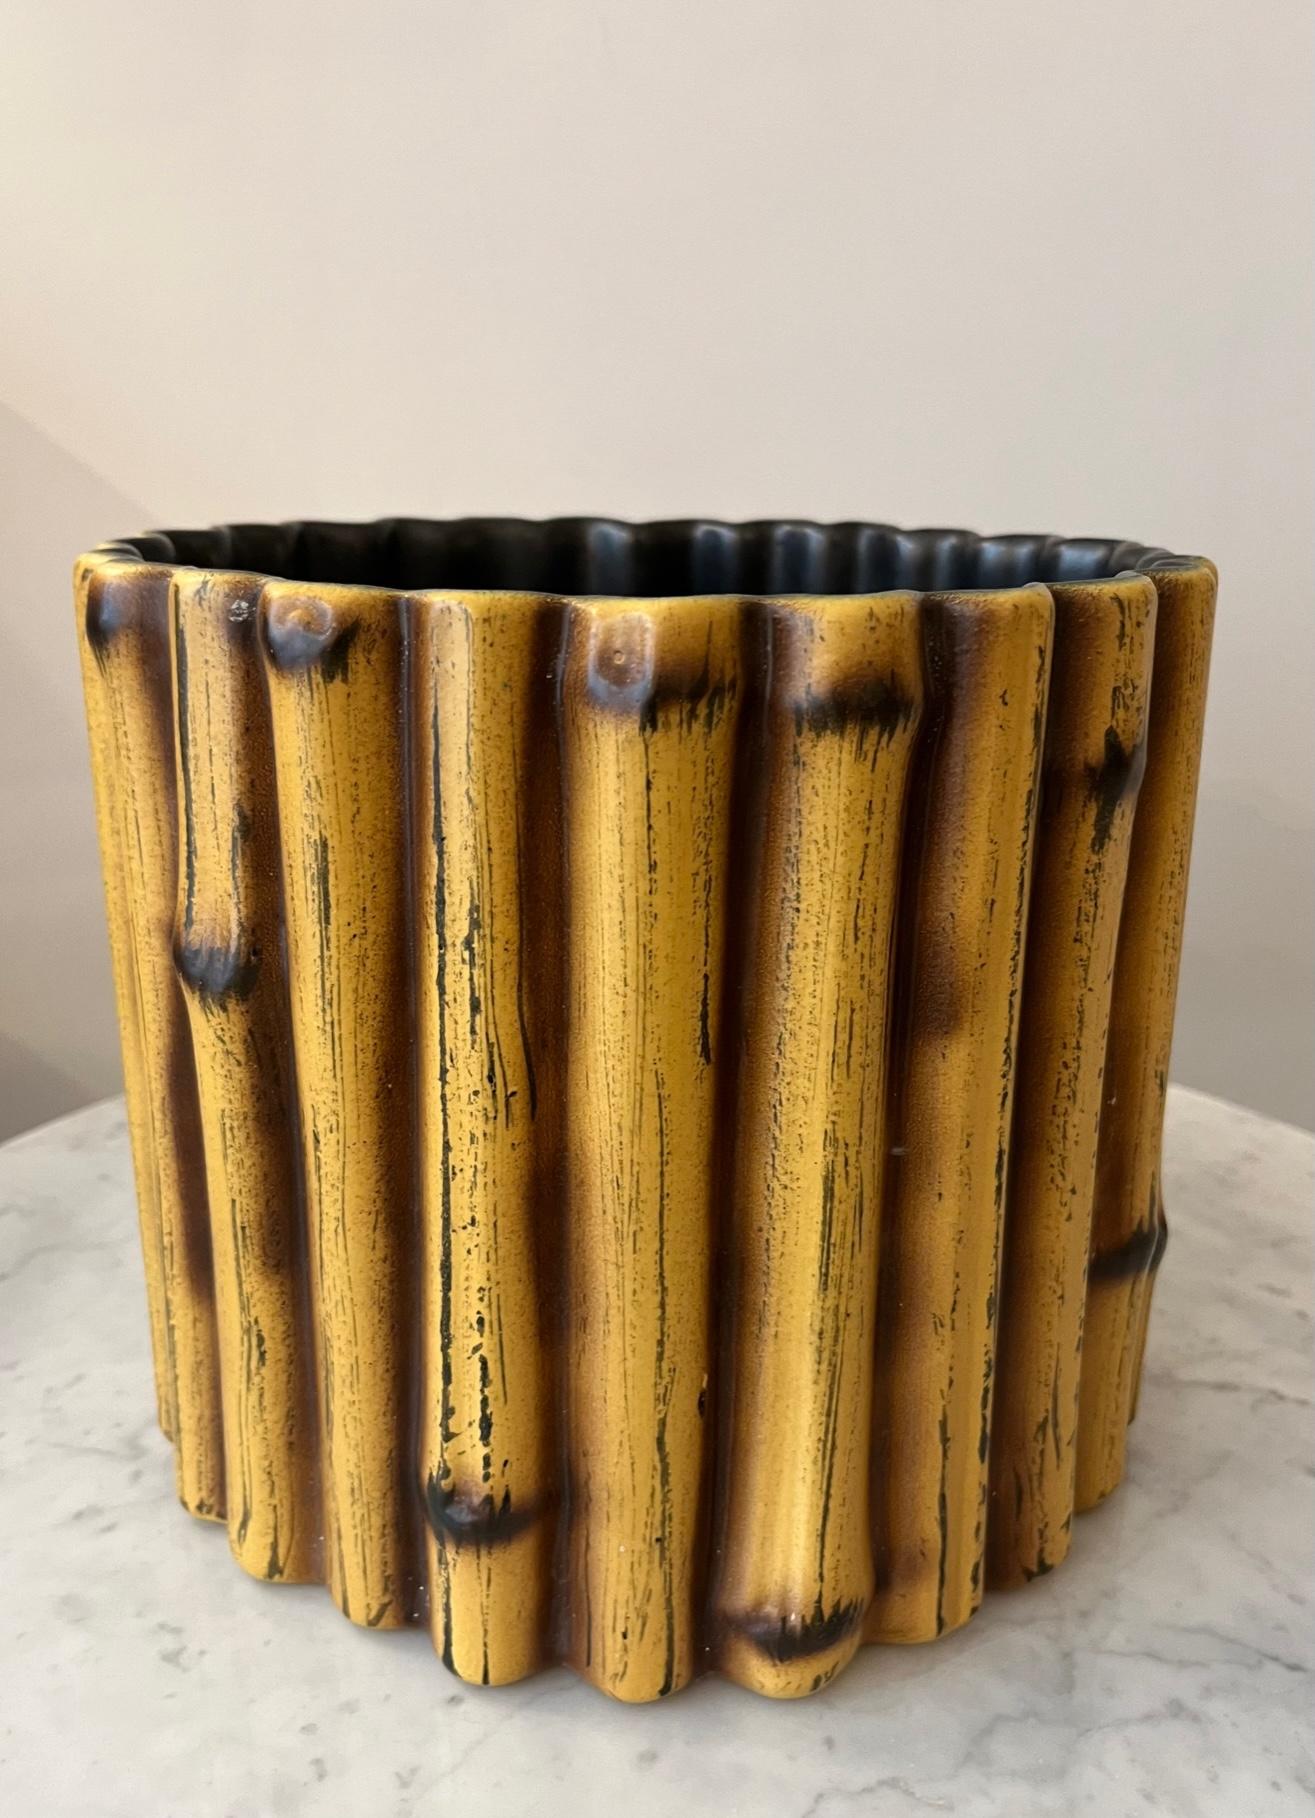 Übertopf aus Steingut von Pol CHAMBOST (1906-1983) 
Zylindrische Form, der Körper besteht aus stilisierten Bambusrohren 
Glasiert mit Neapelgelb, ockerfarben und braun gehöht, innen schwarz.
Unten signiert : 